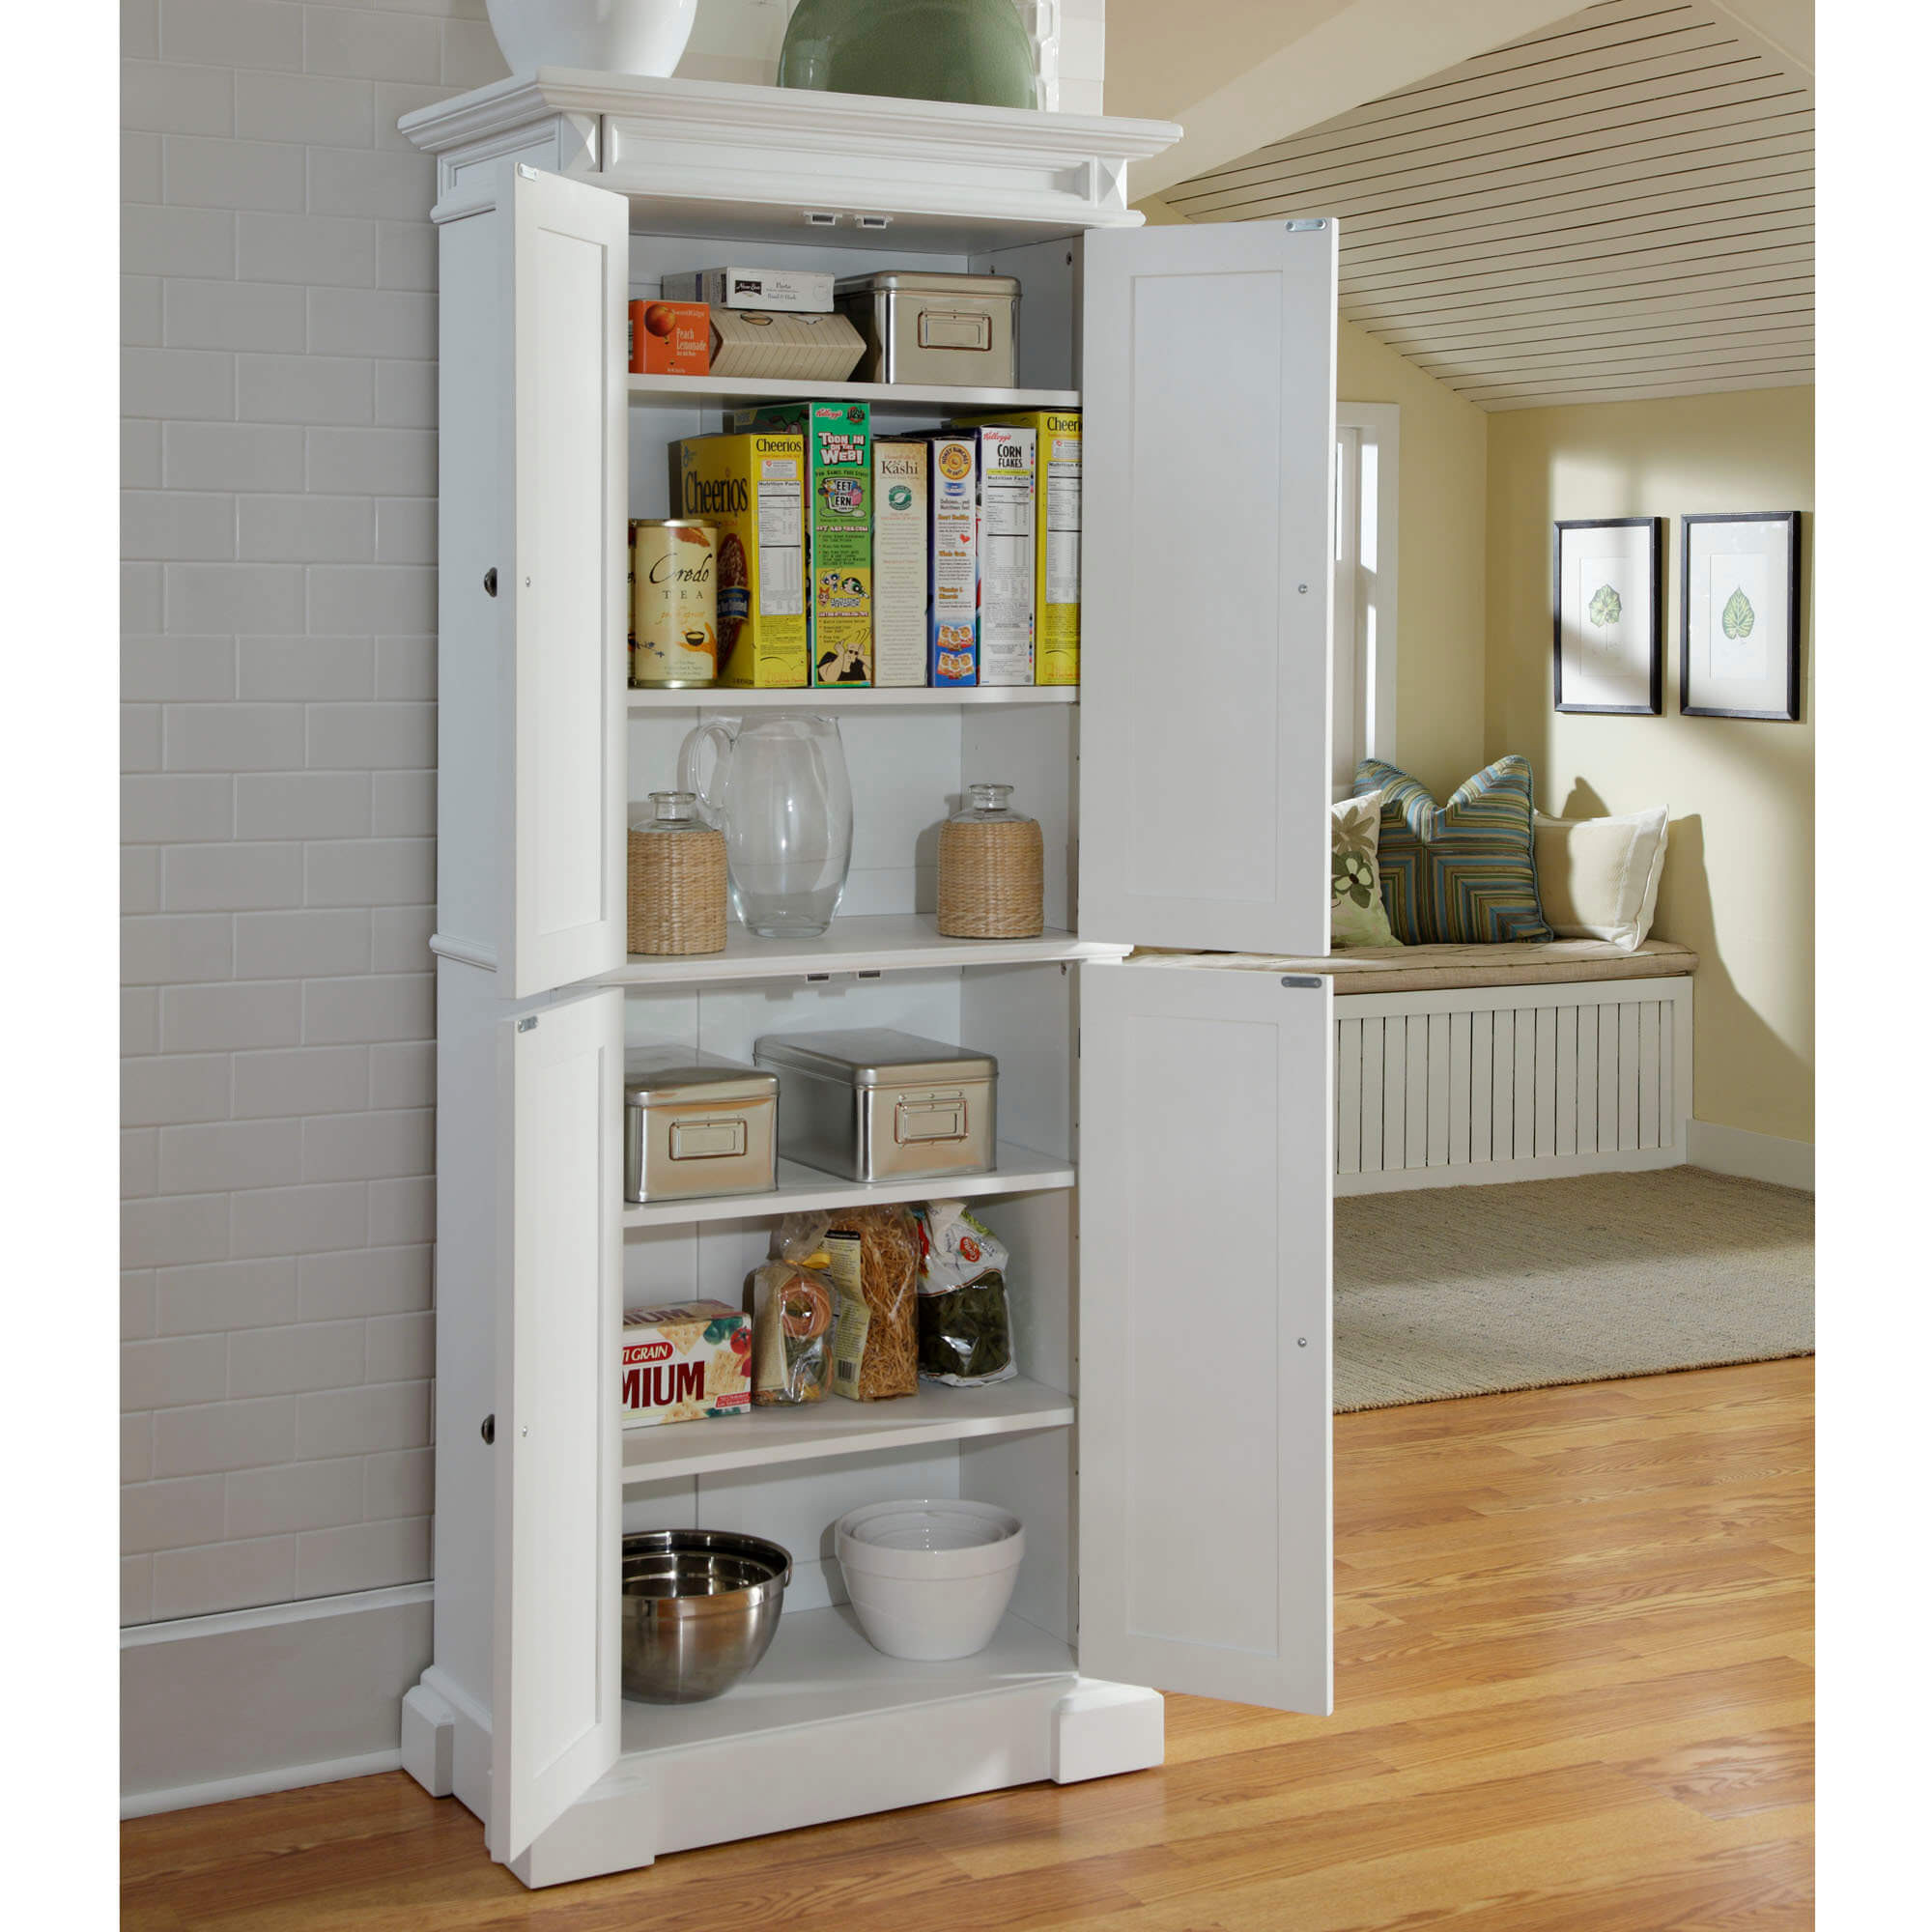 Ikea Kitchen Storage Ideas
 Kitchen Pantry Cabinet Installation Guide TheyDesign